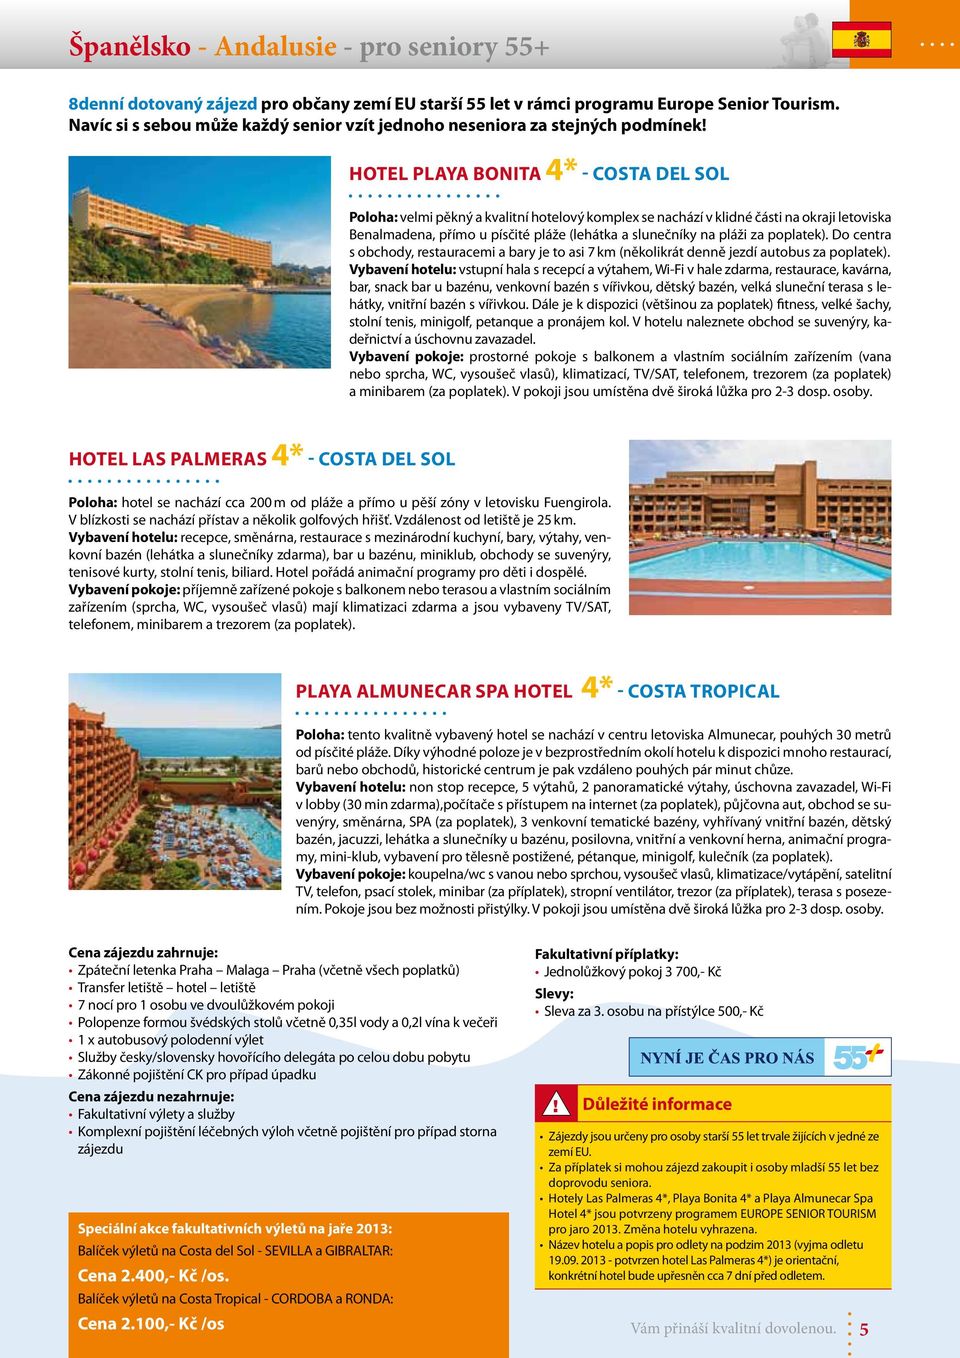 Hotel Playa Bonita 4* - COSTA DEL SOL Poloha: velmi pěkný a kvalitní hotelový komplex se nachází v klidné části na okraji letoviska Benalmadena, přímo u písčité pláže (lehátka a slunečníky na pláži